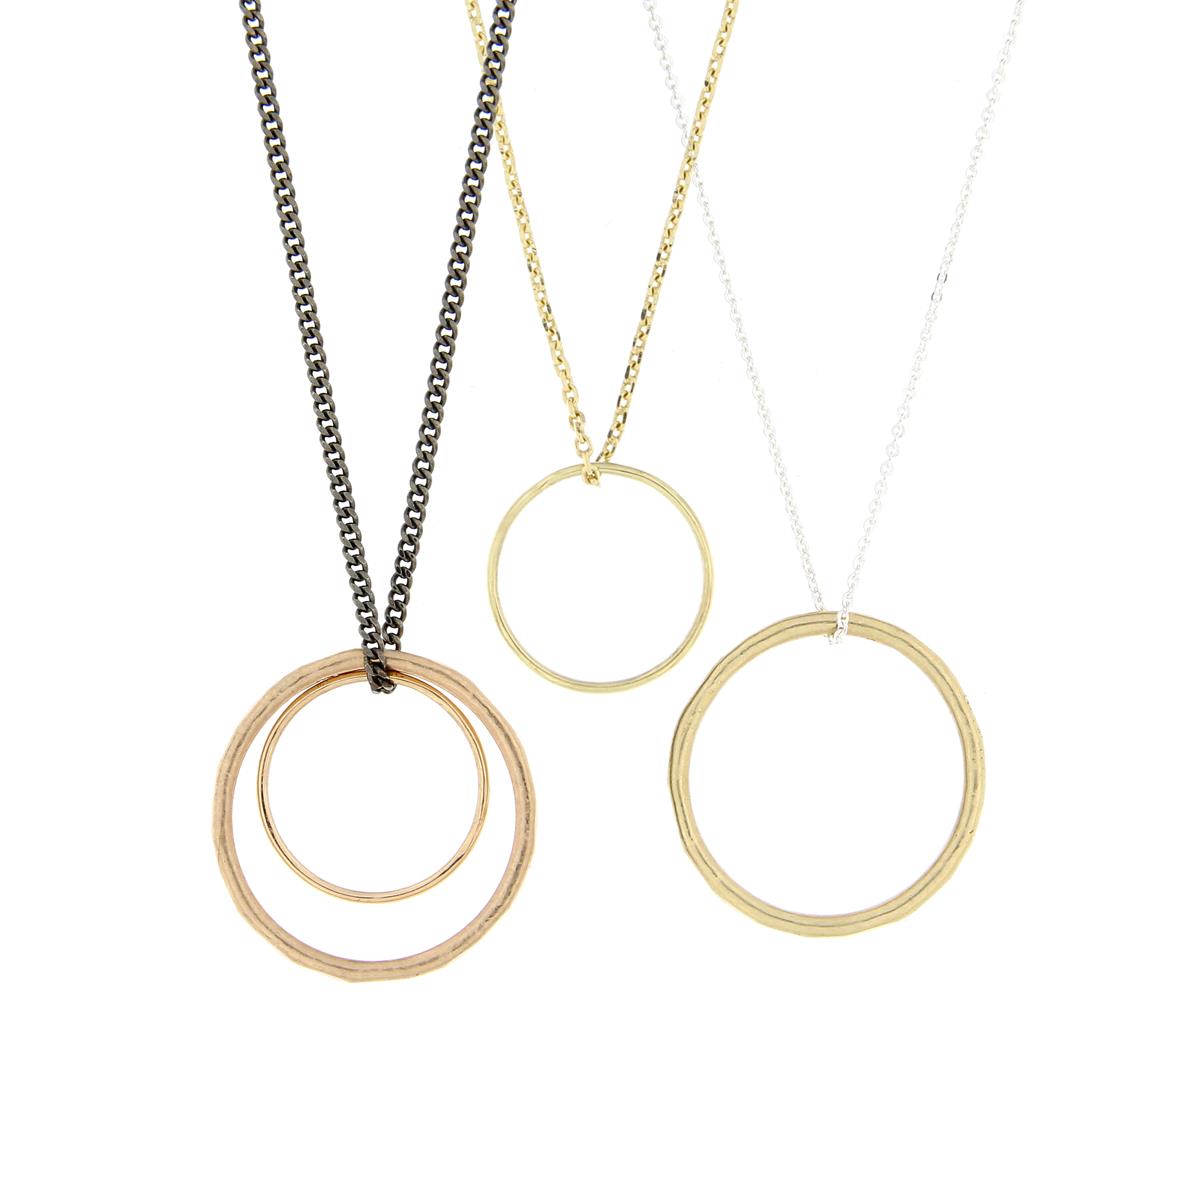 Katie g. Jewellery - Ringe auf Ketten in silber und Gold 4